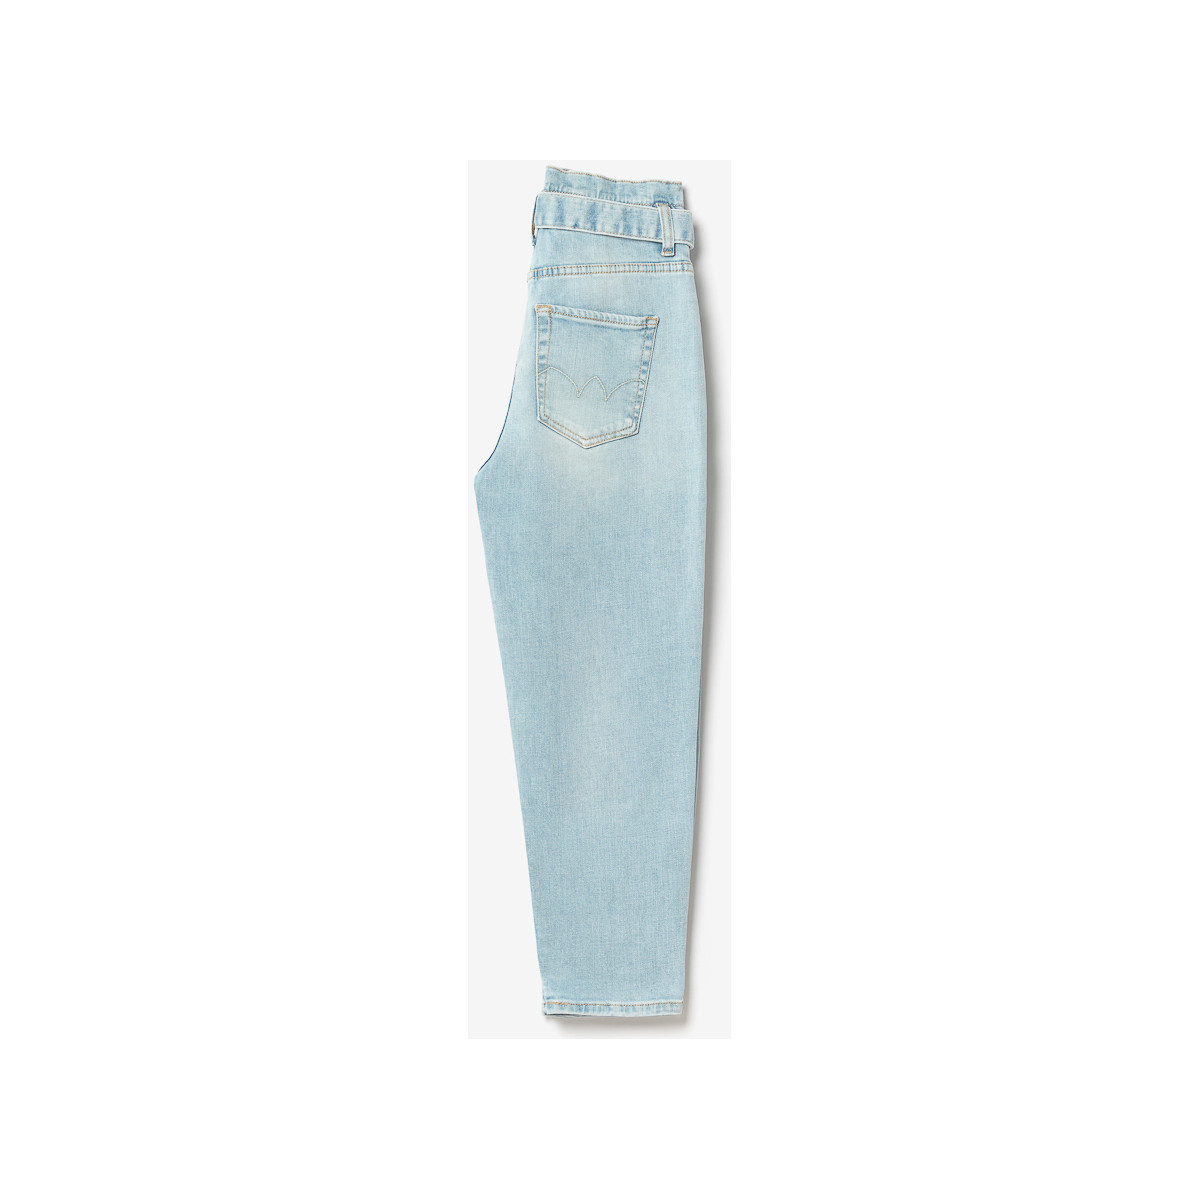 Le Temps des Cerises Bleu Milina boyfit 7/8ème jeans bleu Fot9uqwW